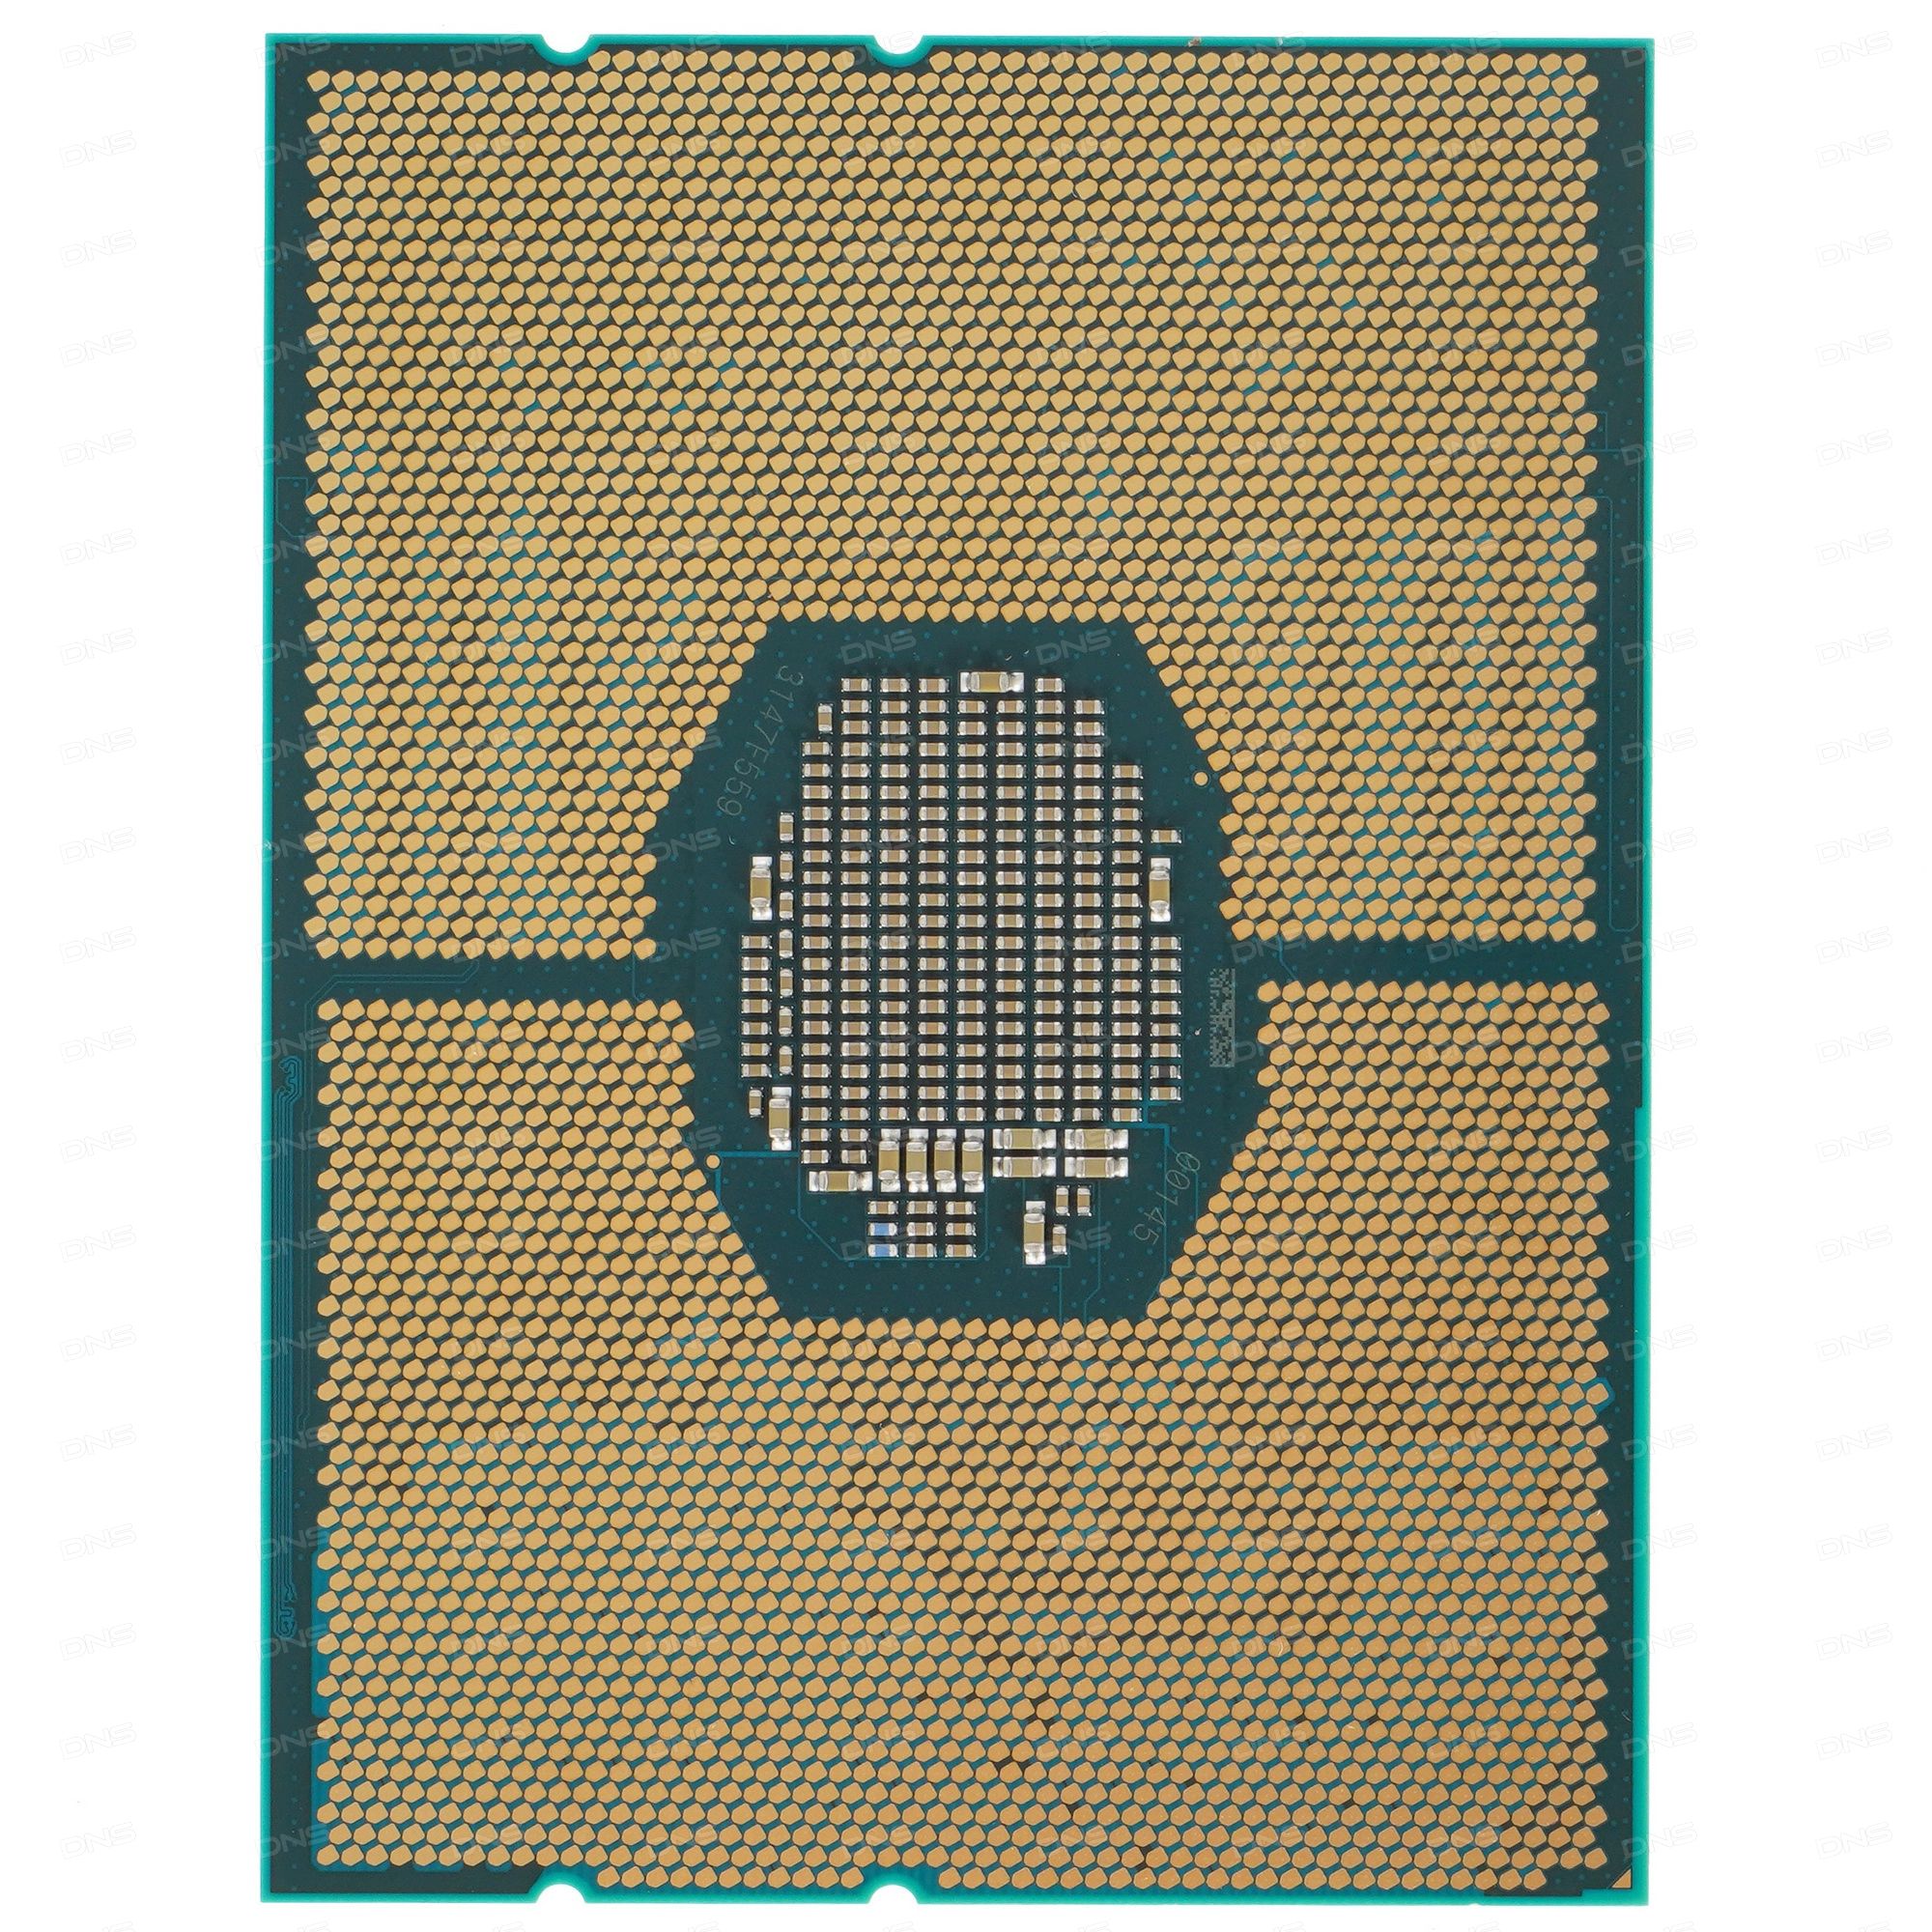 Процессор xeon gold. Intel LGA 3647 процессоры. Intel Xeon Gold 6230. Процессор Intel Xeon Silver 4210. Процессор Xeon Gold 5218.